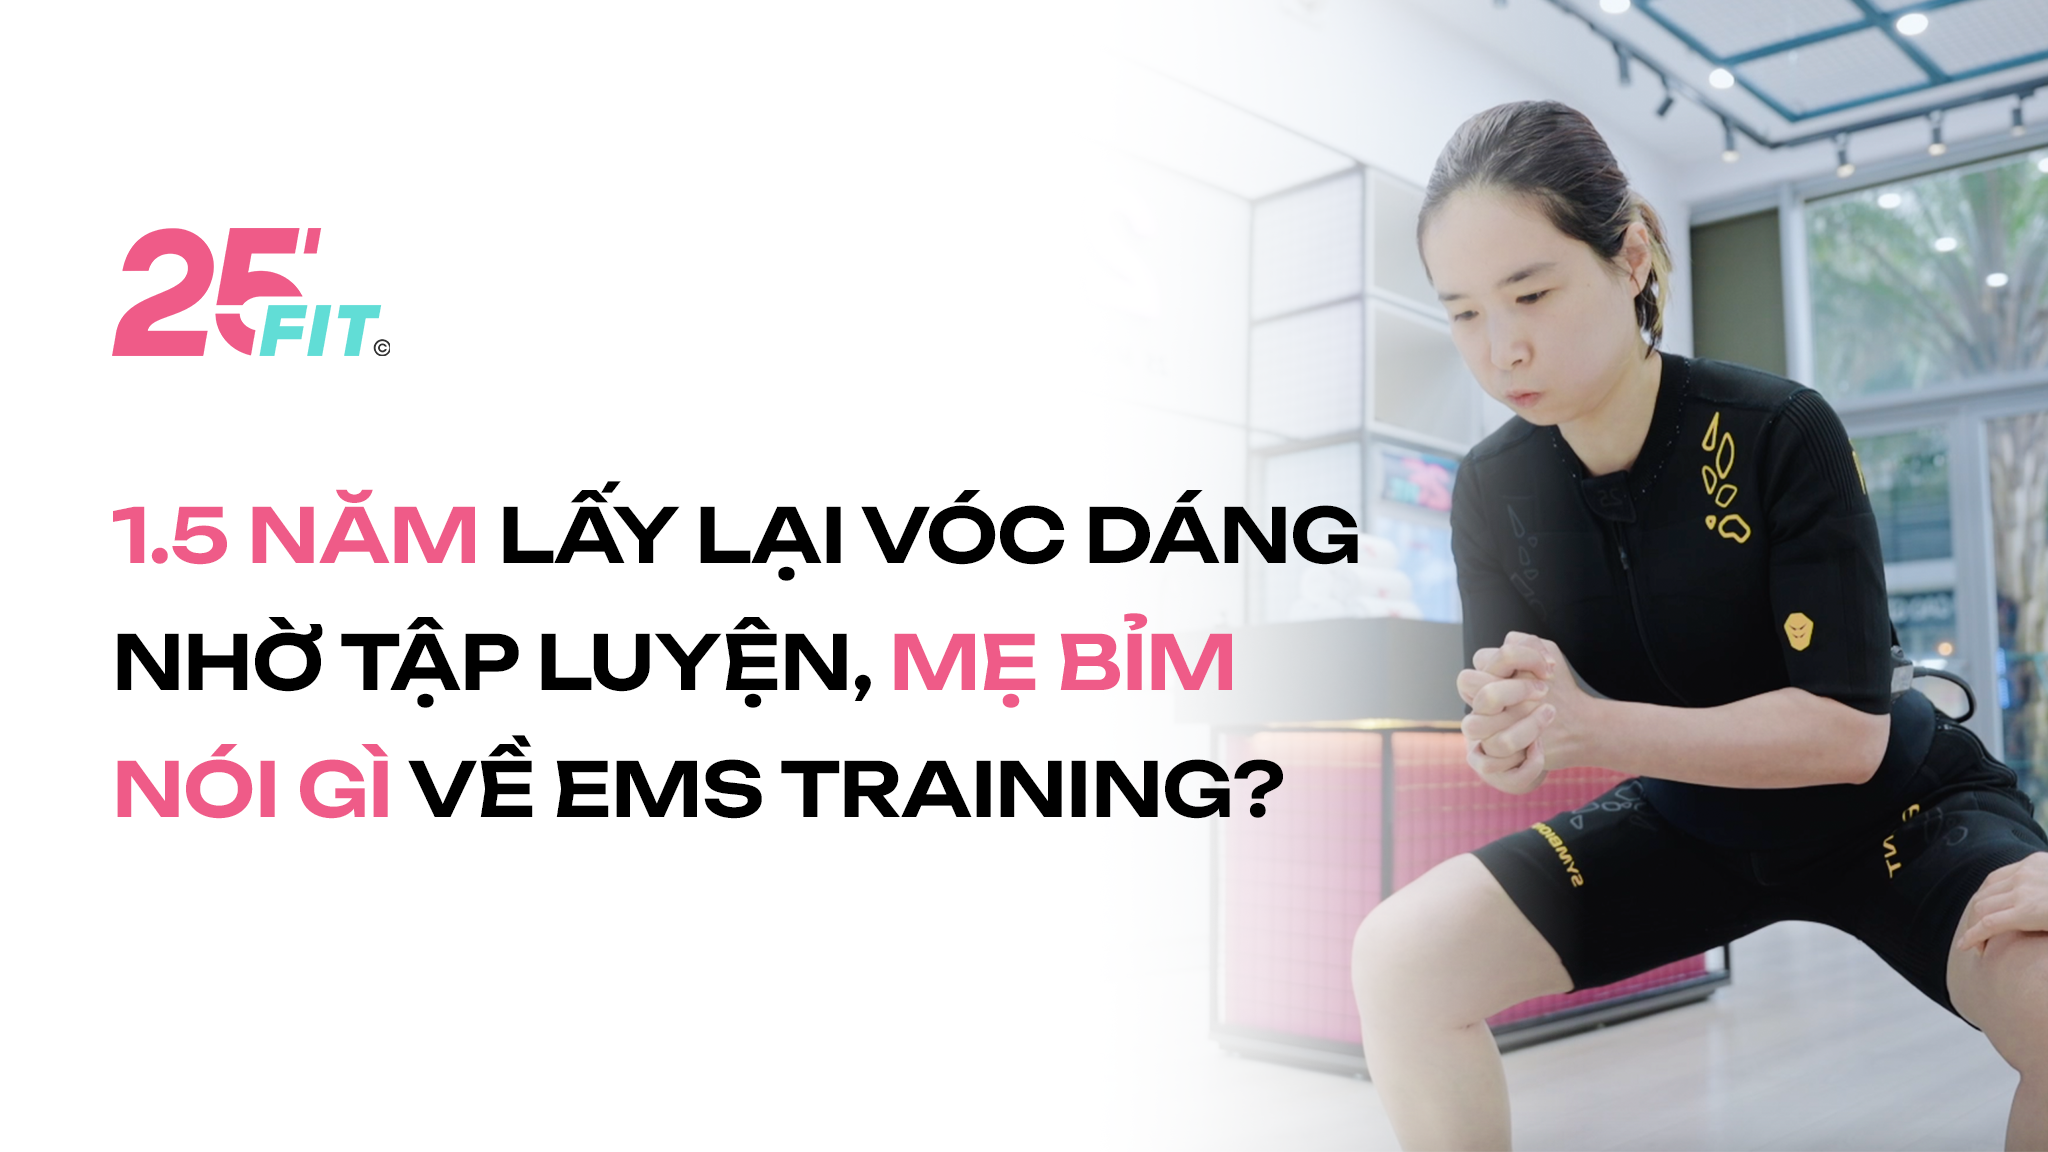 1.5 năm lấy lại vóc dáng nhờ tập luyện, mẹ bỉm nói gì về EMS Training?